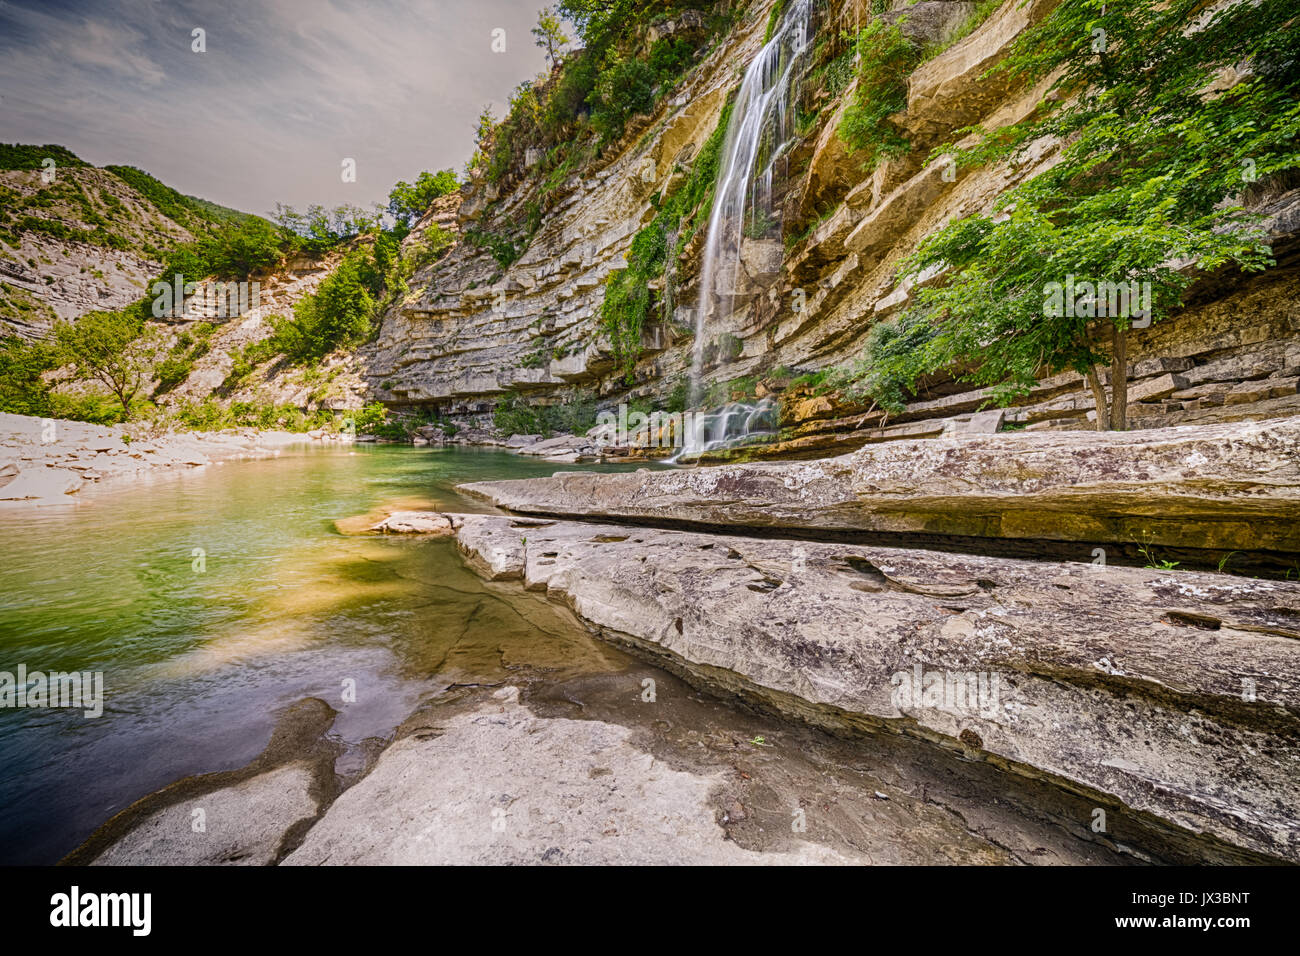 Le splendide cascate del Fosso canaglia, significato canaglia fossato, nei pressi di Bologna in Italia Foto Stock